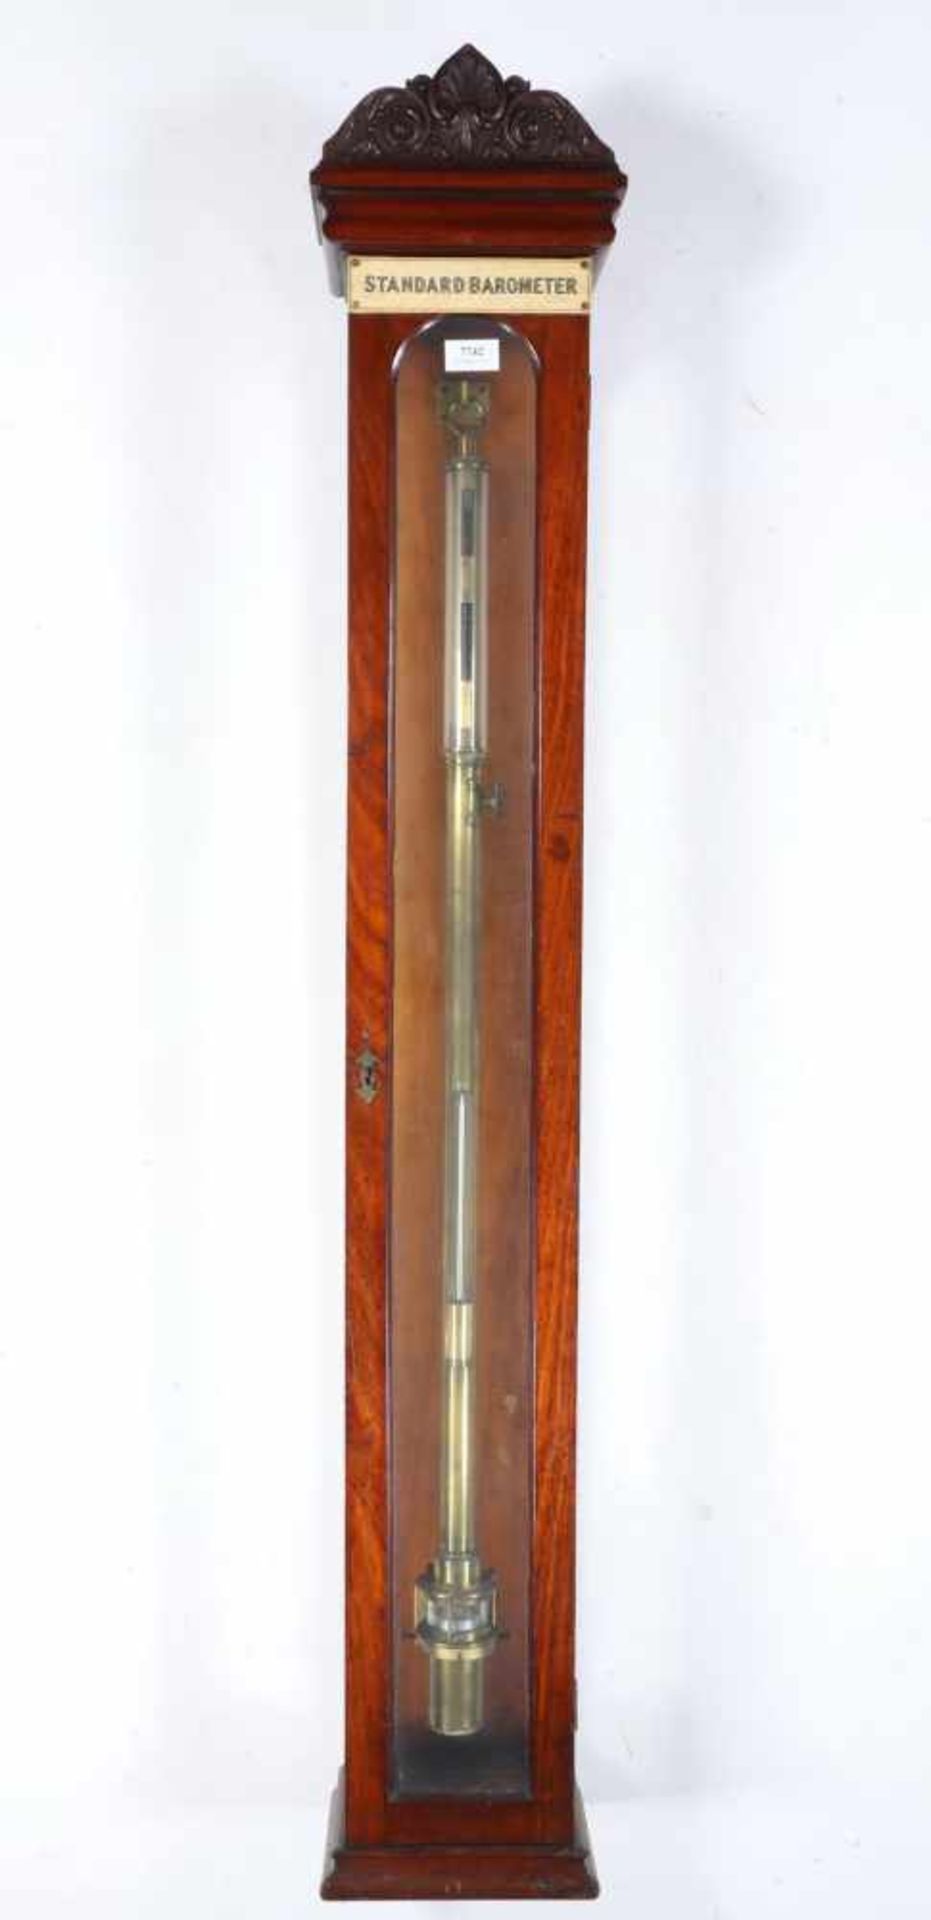 Engeland, messing staafbarometer, ca. 1840,in mahoniniehouten vitrine met gestoken kuif. Adres (